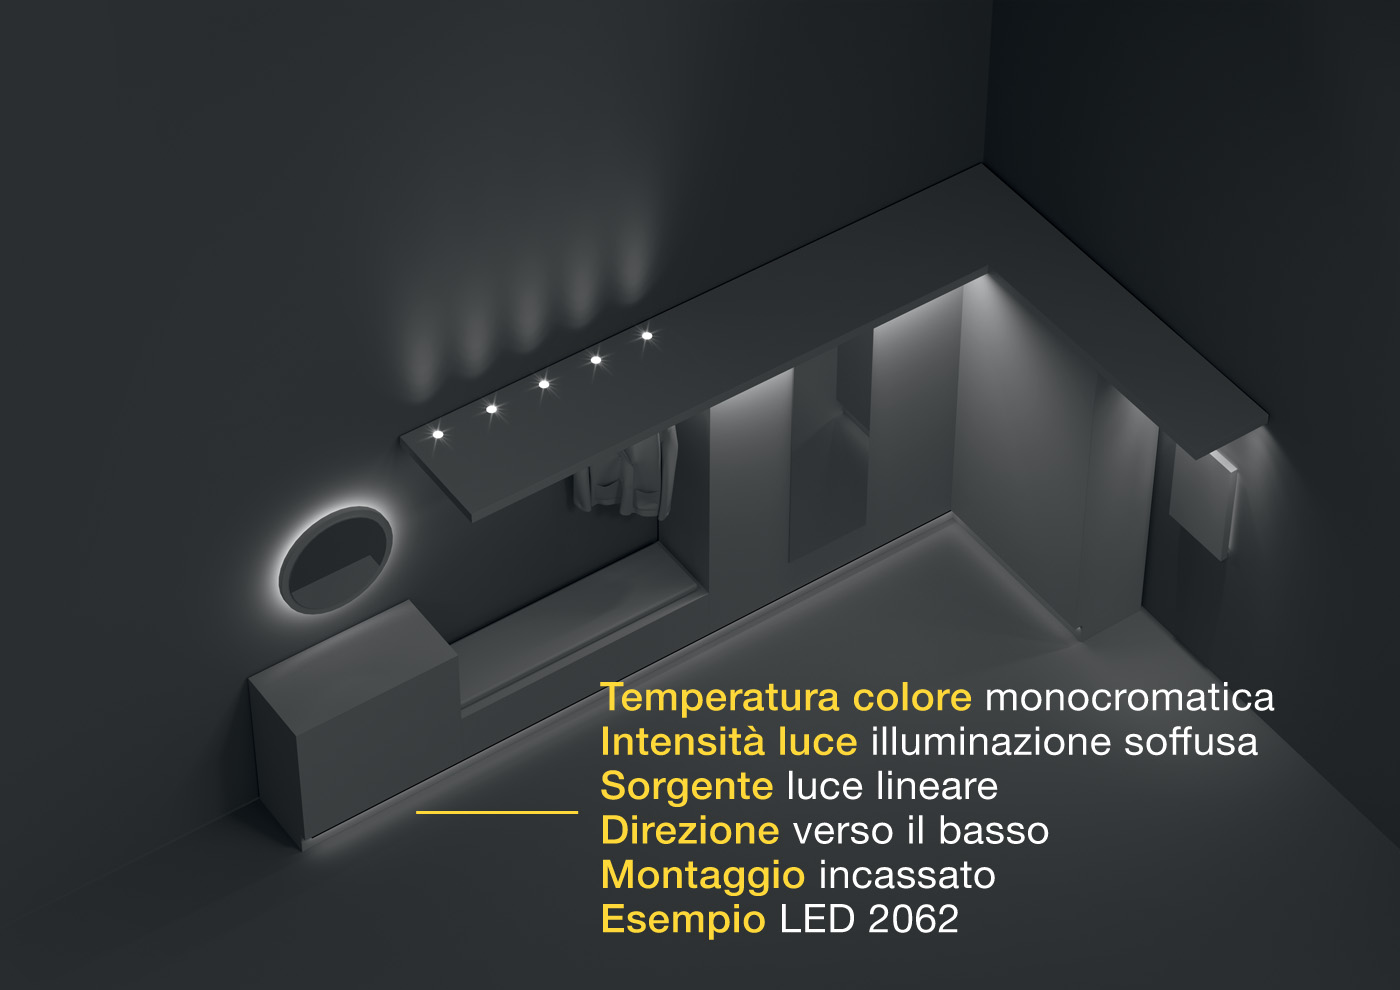 Loox 5: La luce negli spazi contenitivi.